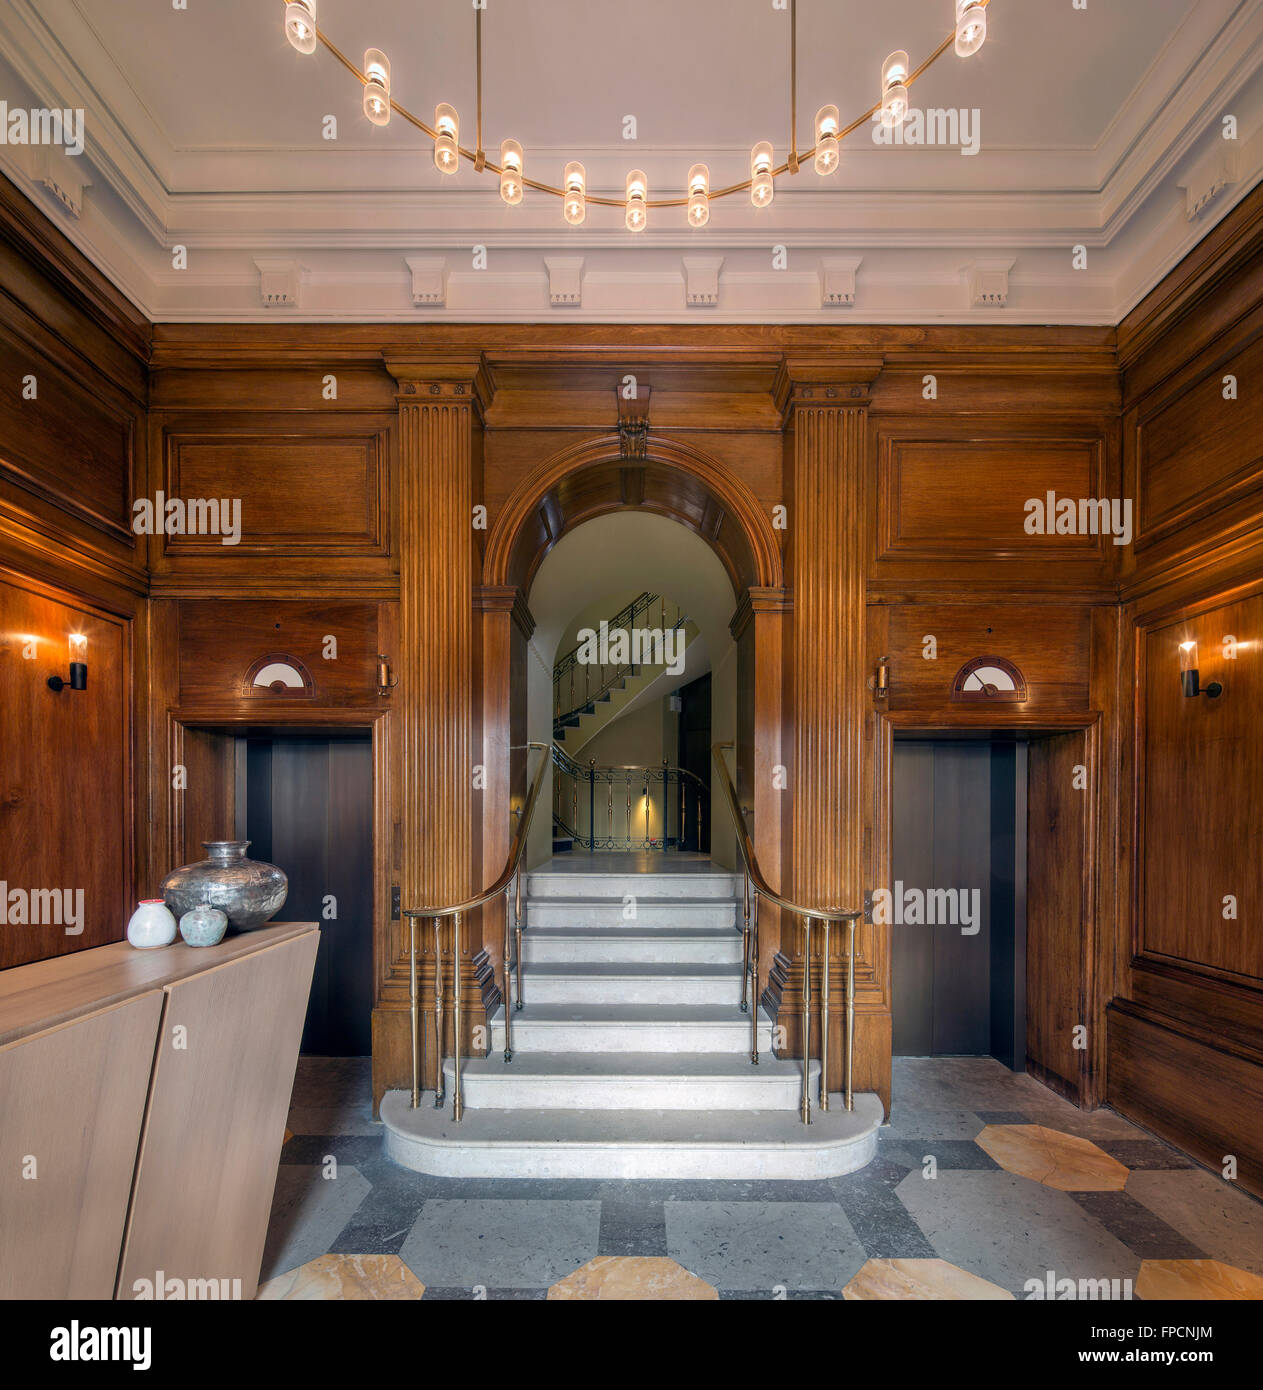 Una vista interna di un famoso edificio a Londra, chiamato il Royal Cafe, che mostra la grande decorazione di interni. Foto Stock